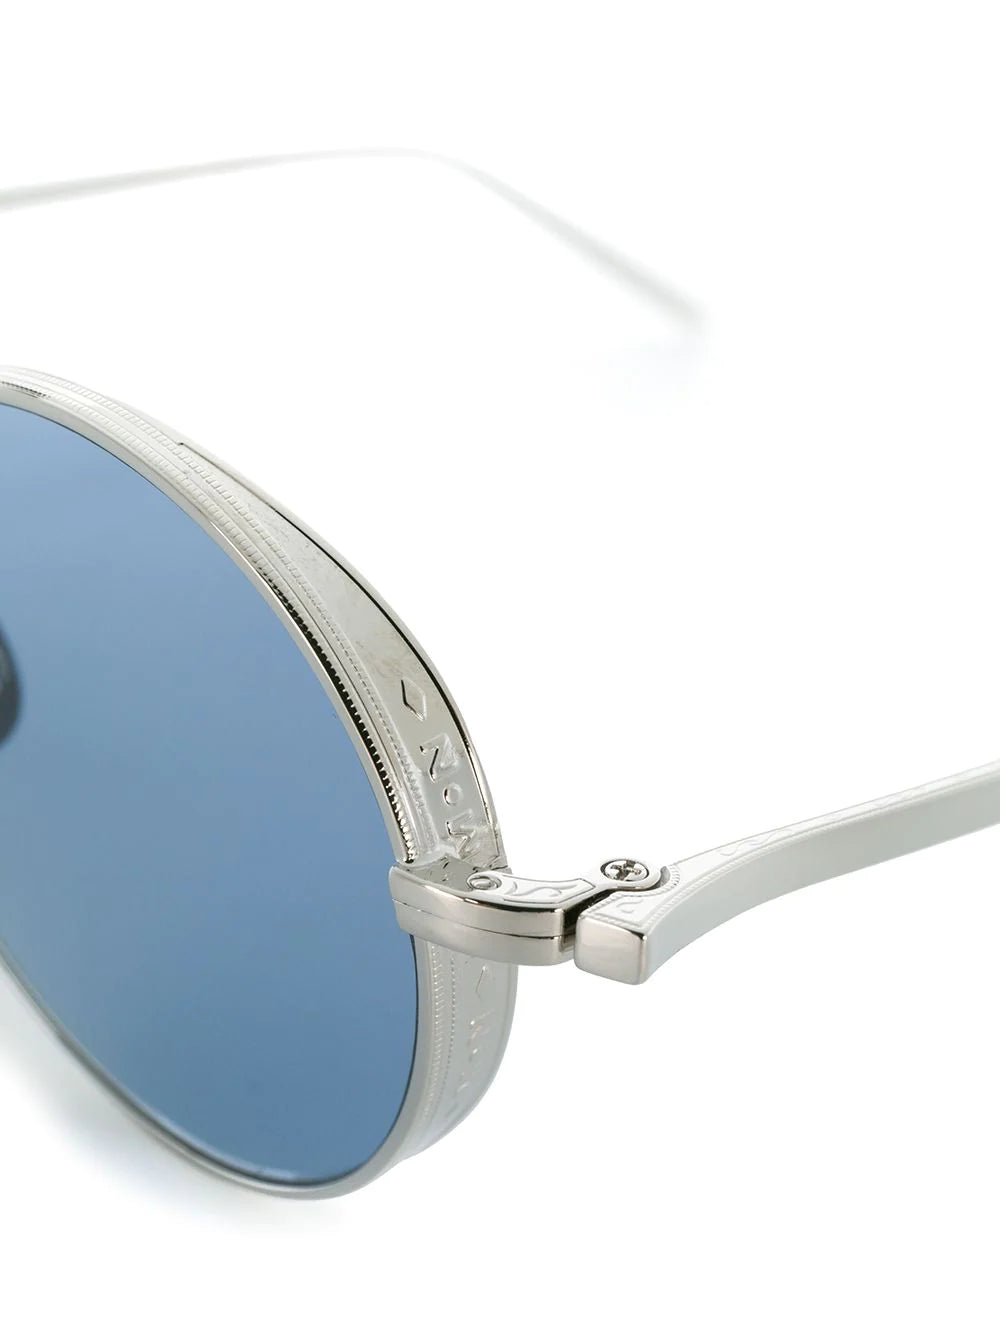 round framed sunglasses - SHEET-1